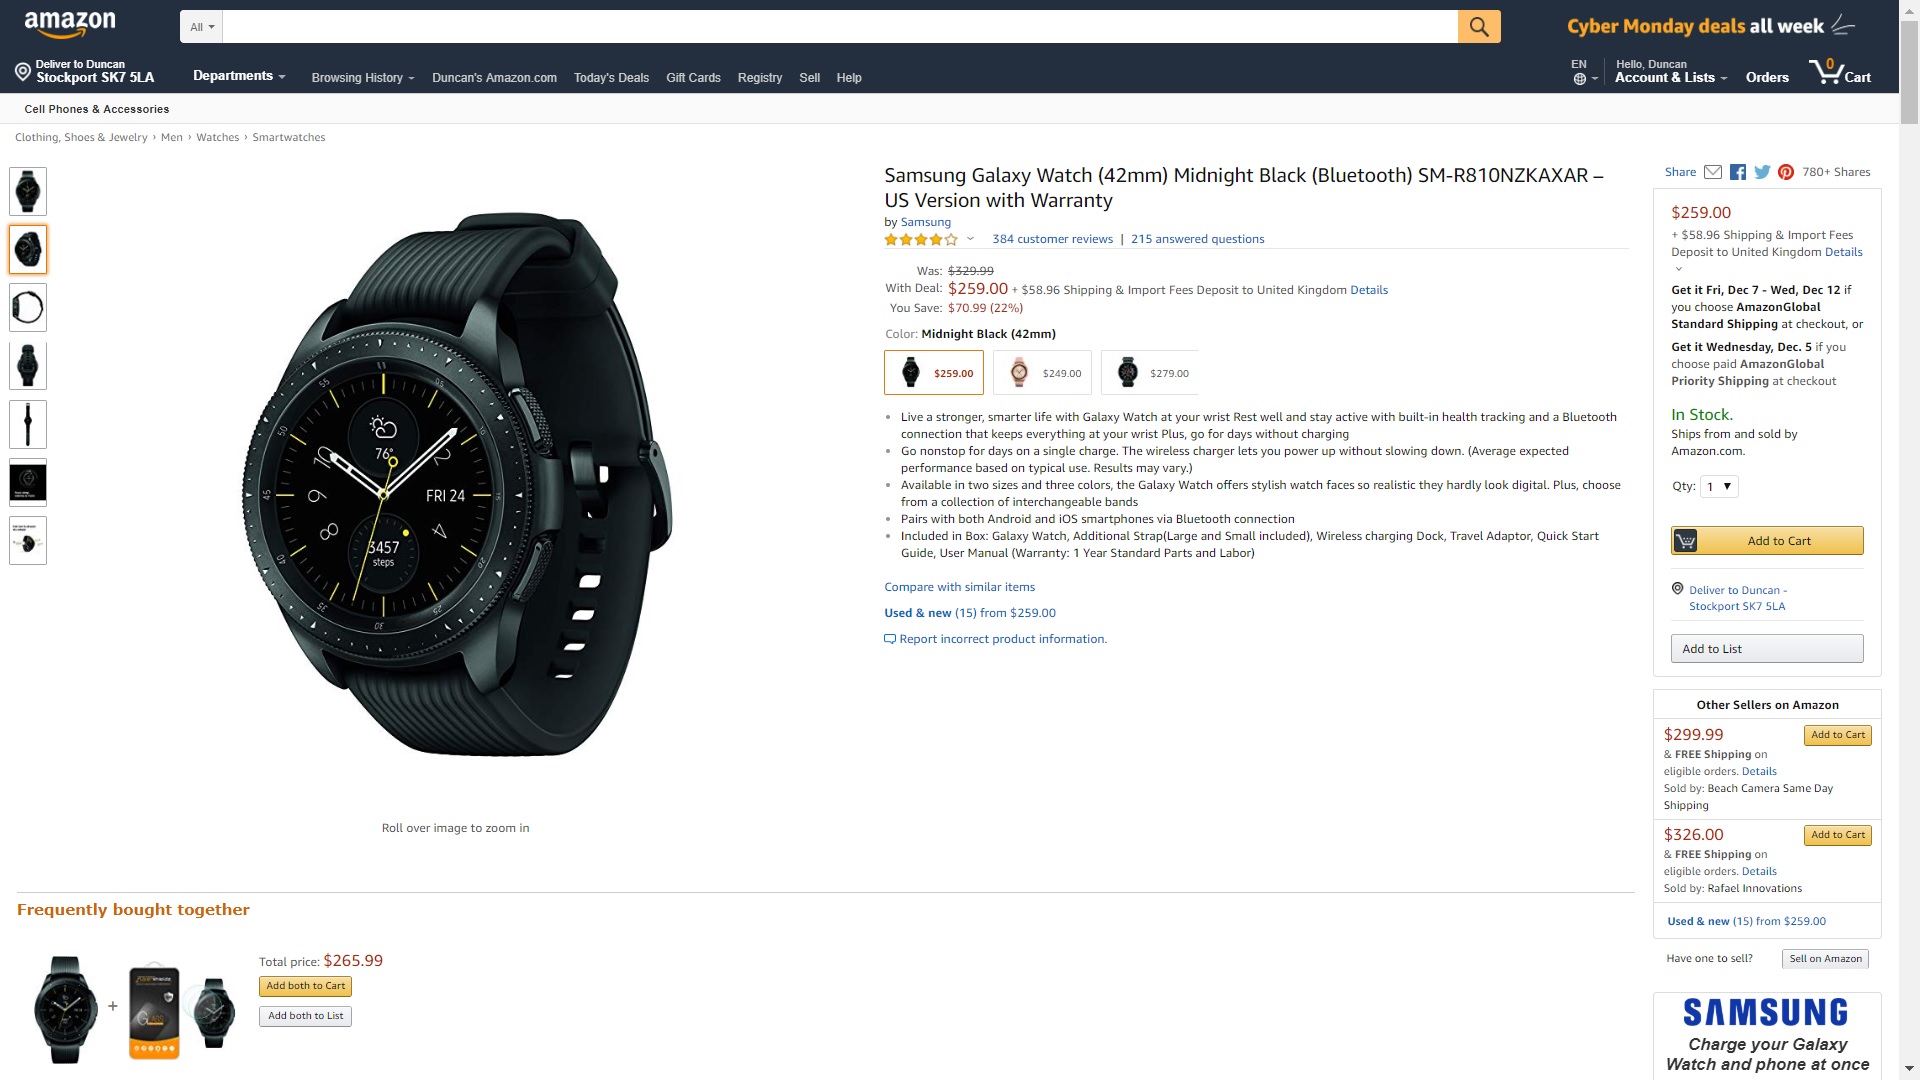 Galaxy Watch Amazon Deal